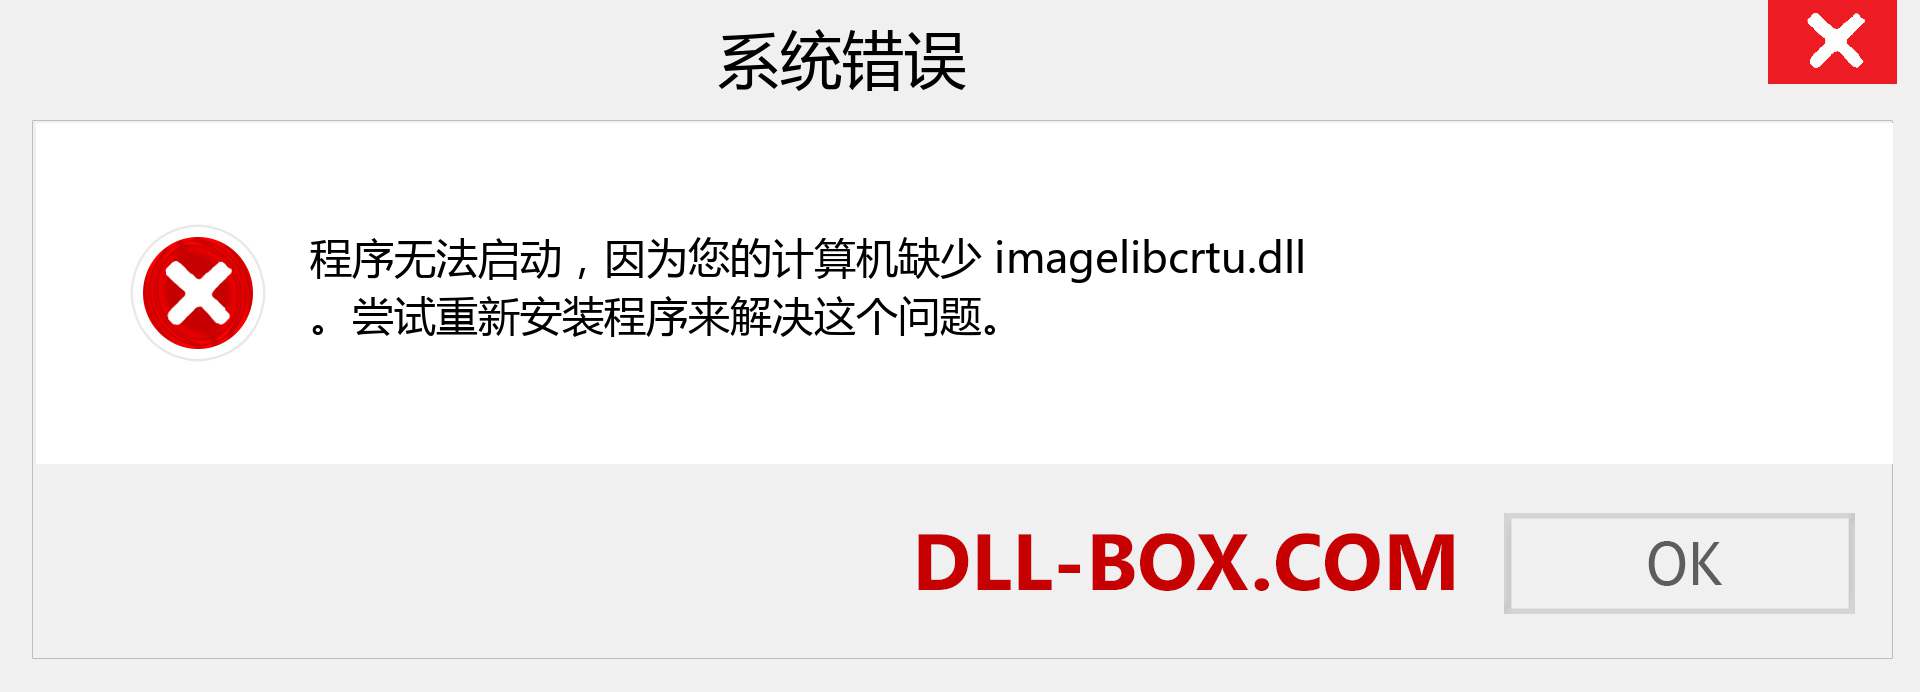 imagelibcrtu.dll 文件丢失？。 适用于 Windows 7、8、10 的下载 - 修复 Windows、照片、图像上的 imagelibcrtu dll 丢失错误